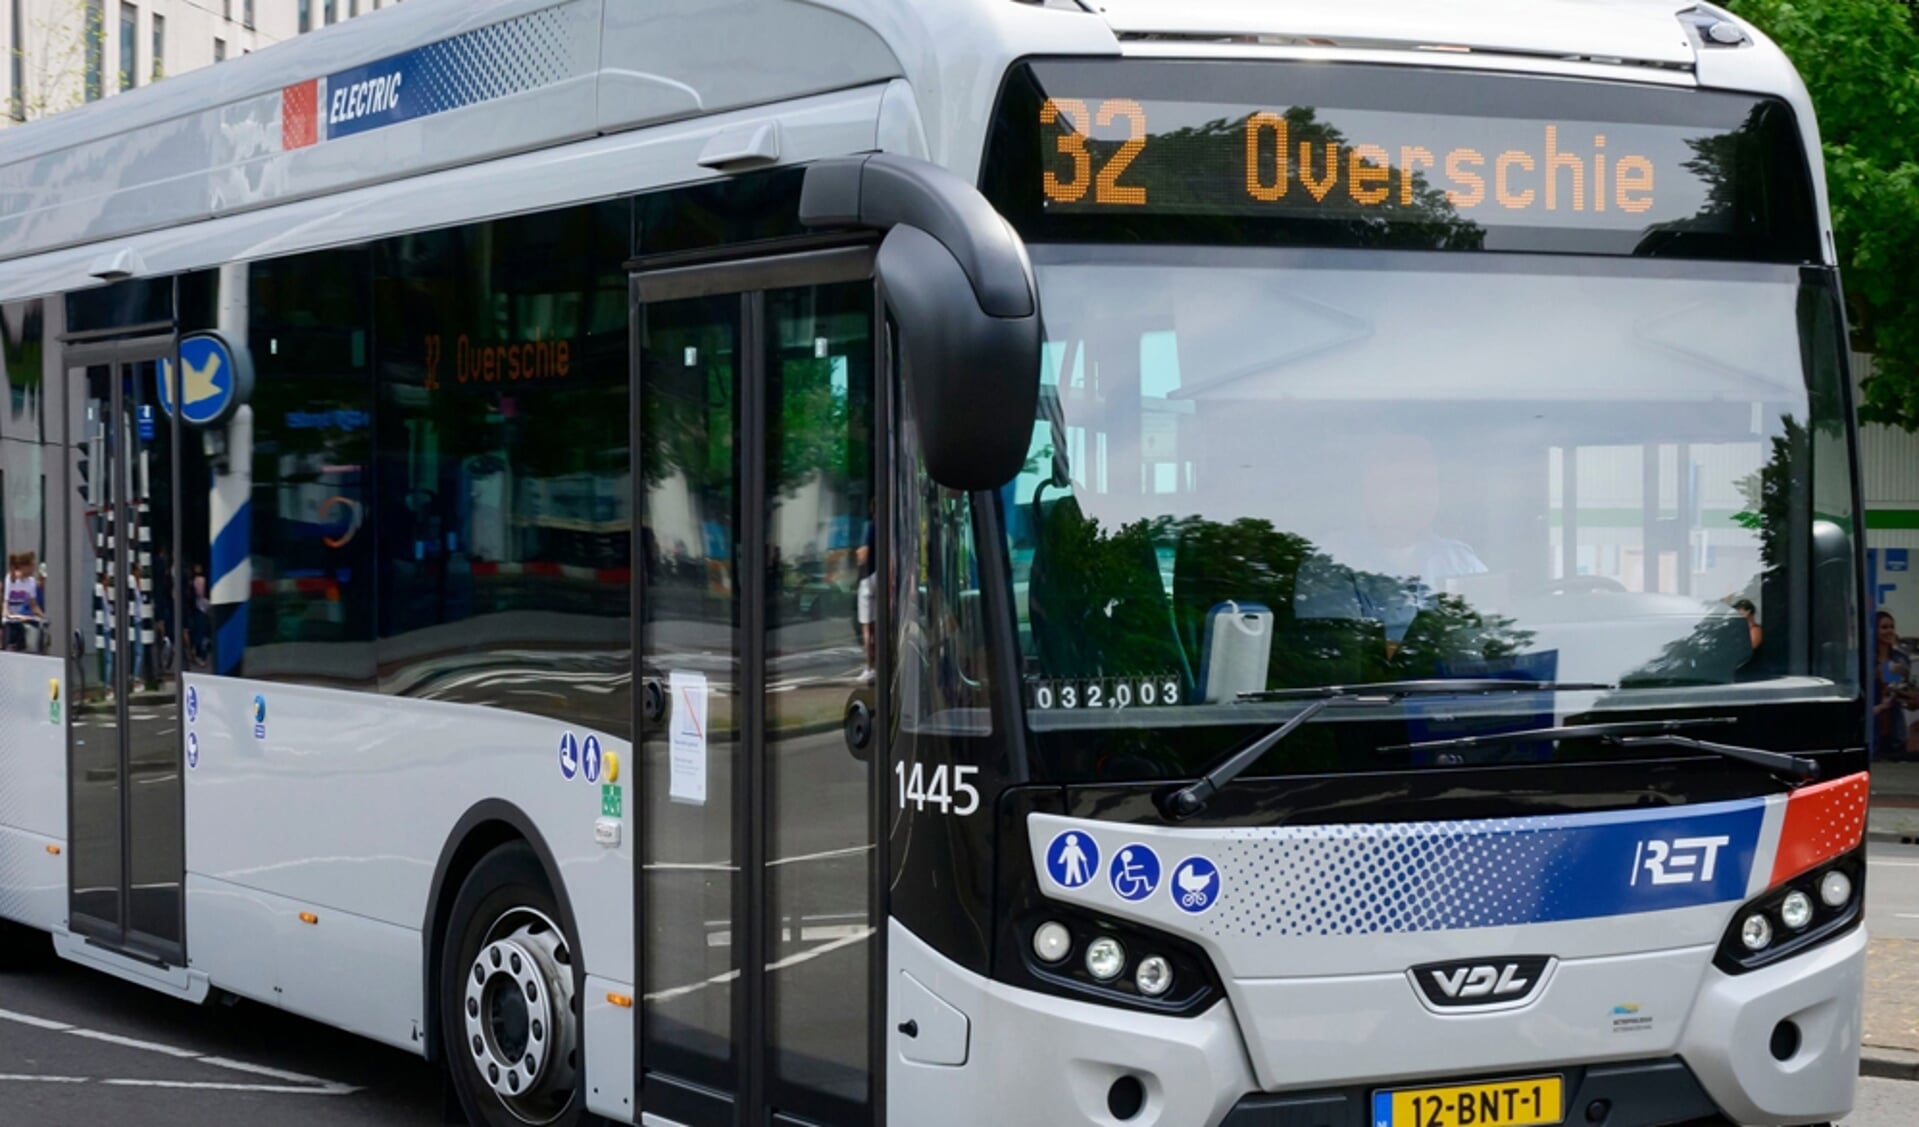 Nieuwe aankomst President bijtend Opgelet: vrijdag kunnen er weer bussen uitvallen vanwege staking -  Adverteren Rotterdam | De Havenloods | Krant en Online